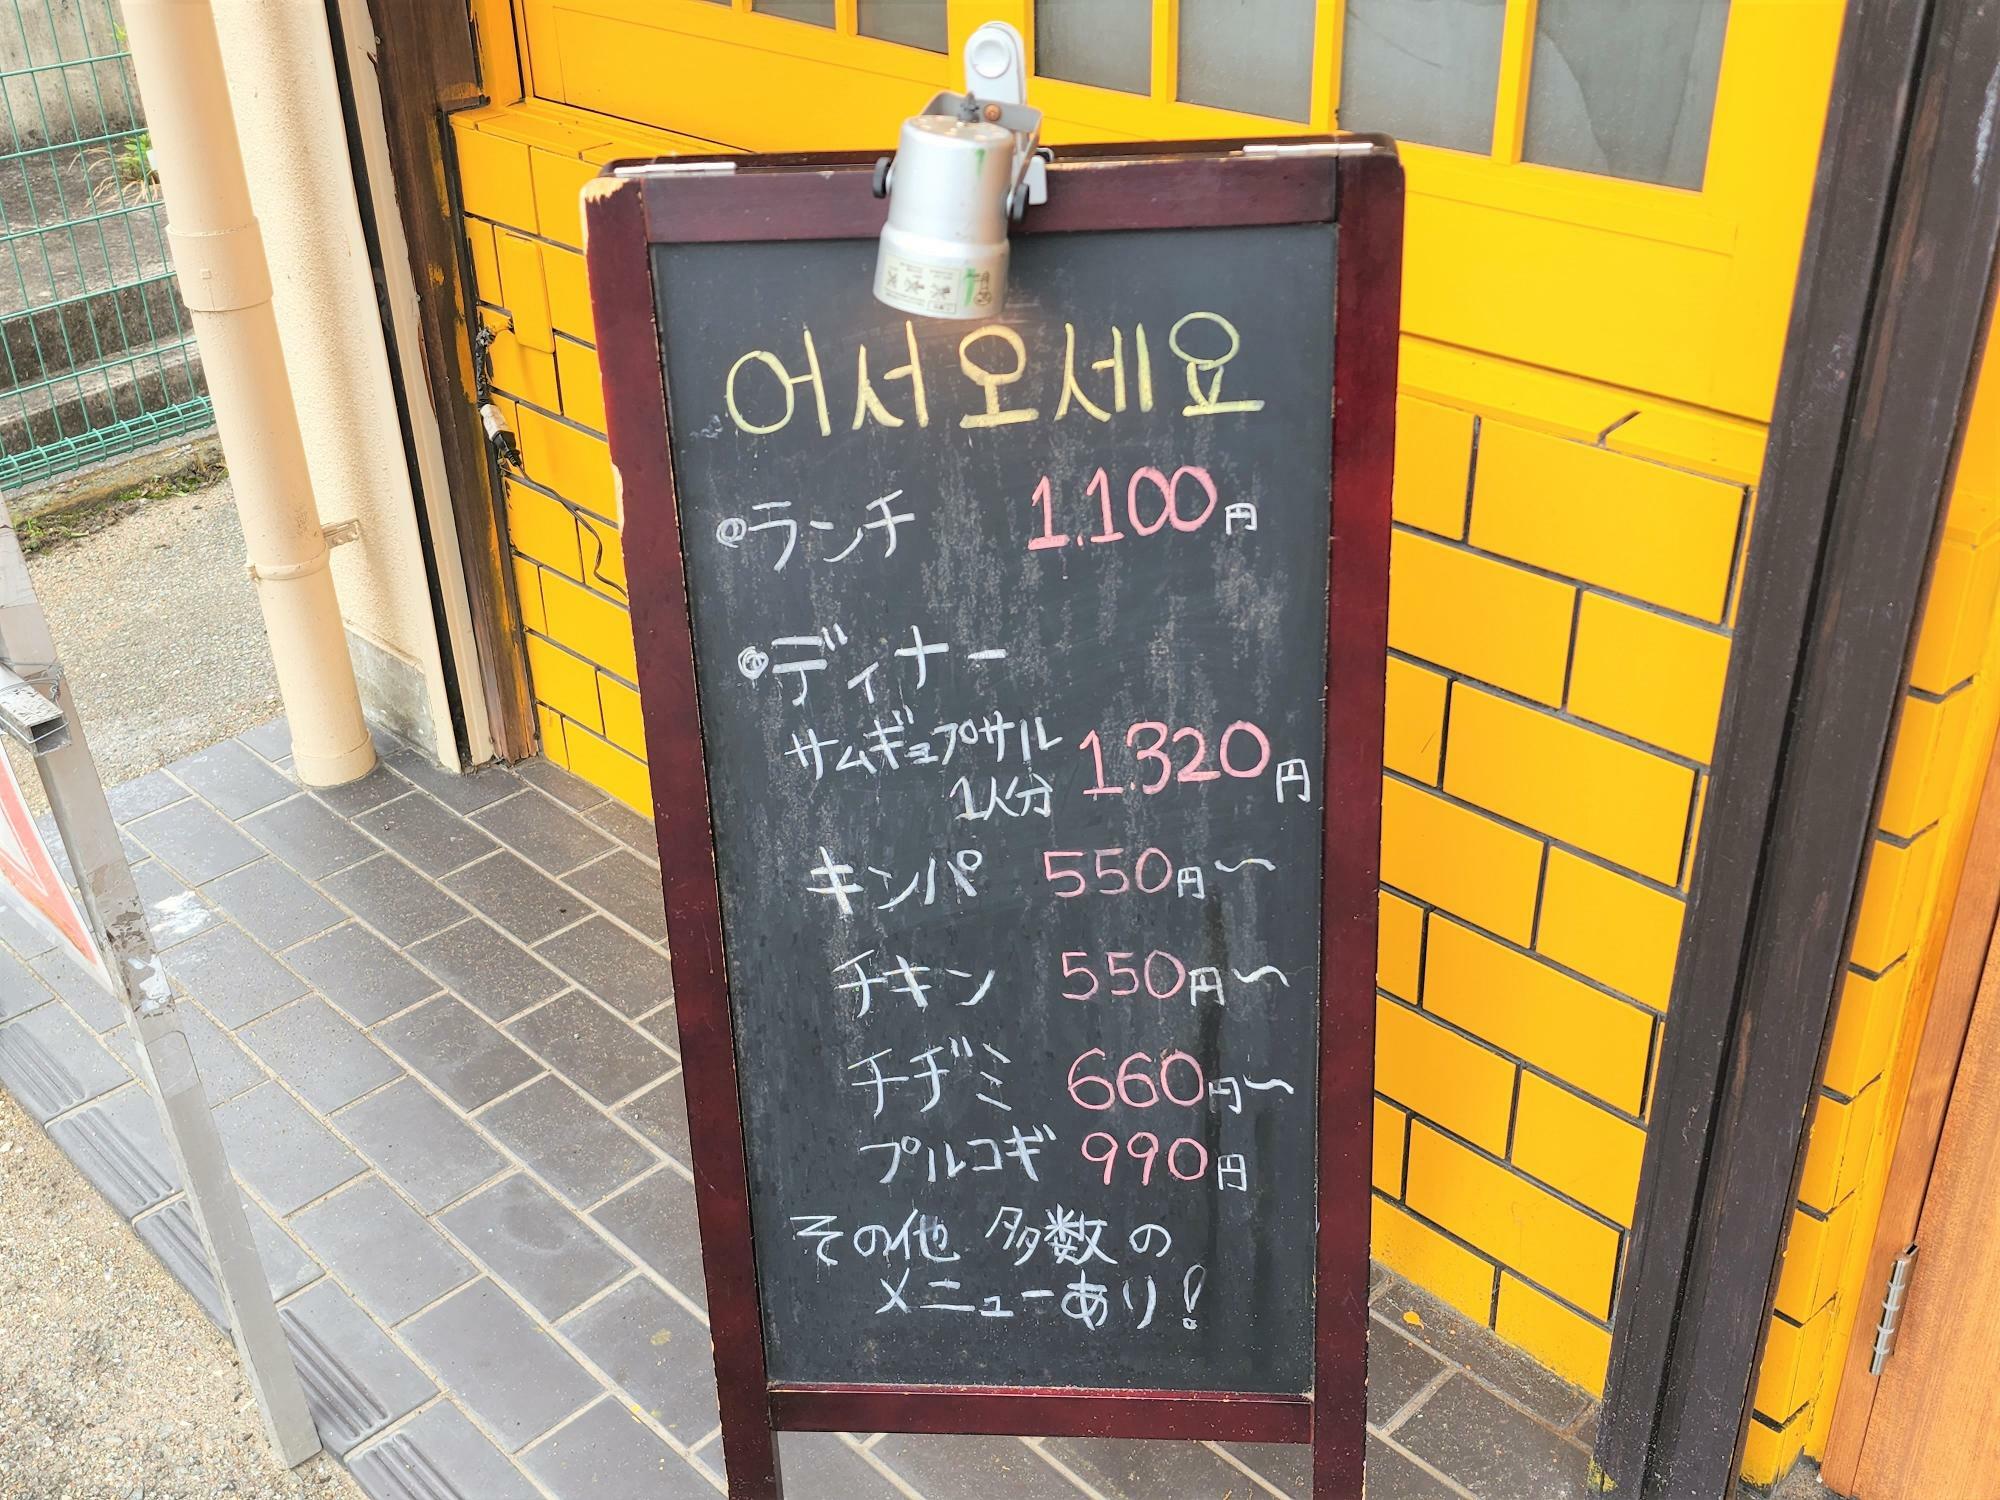 韓国料理「냠냠 ニャムニャム」のメニュー看板。